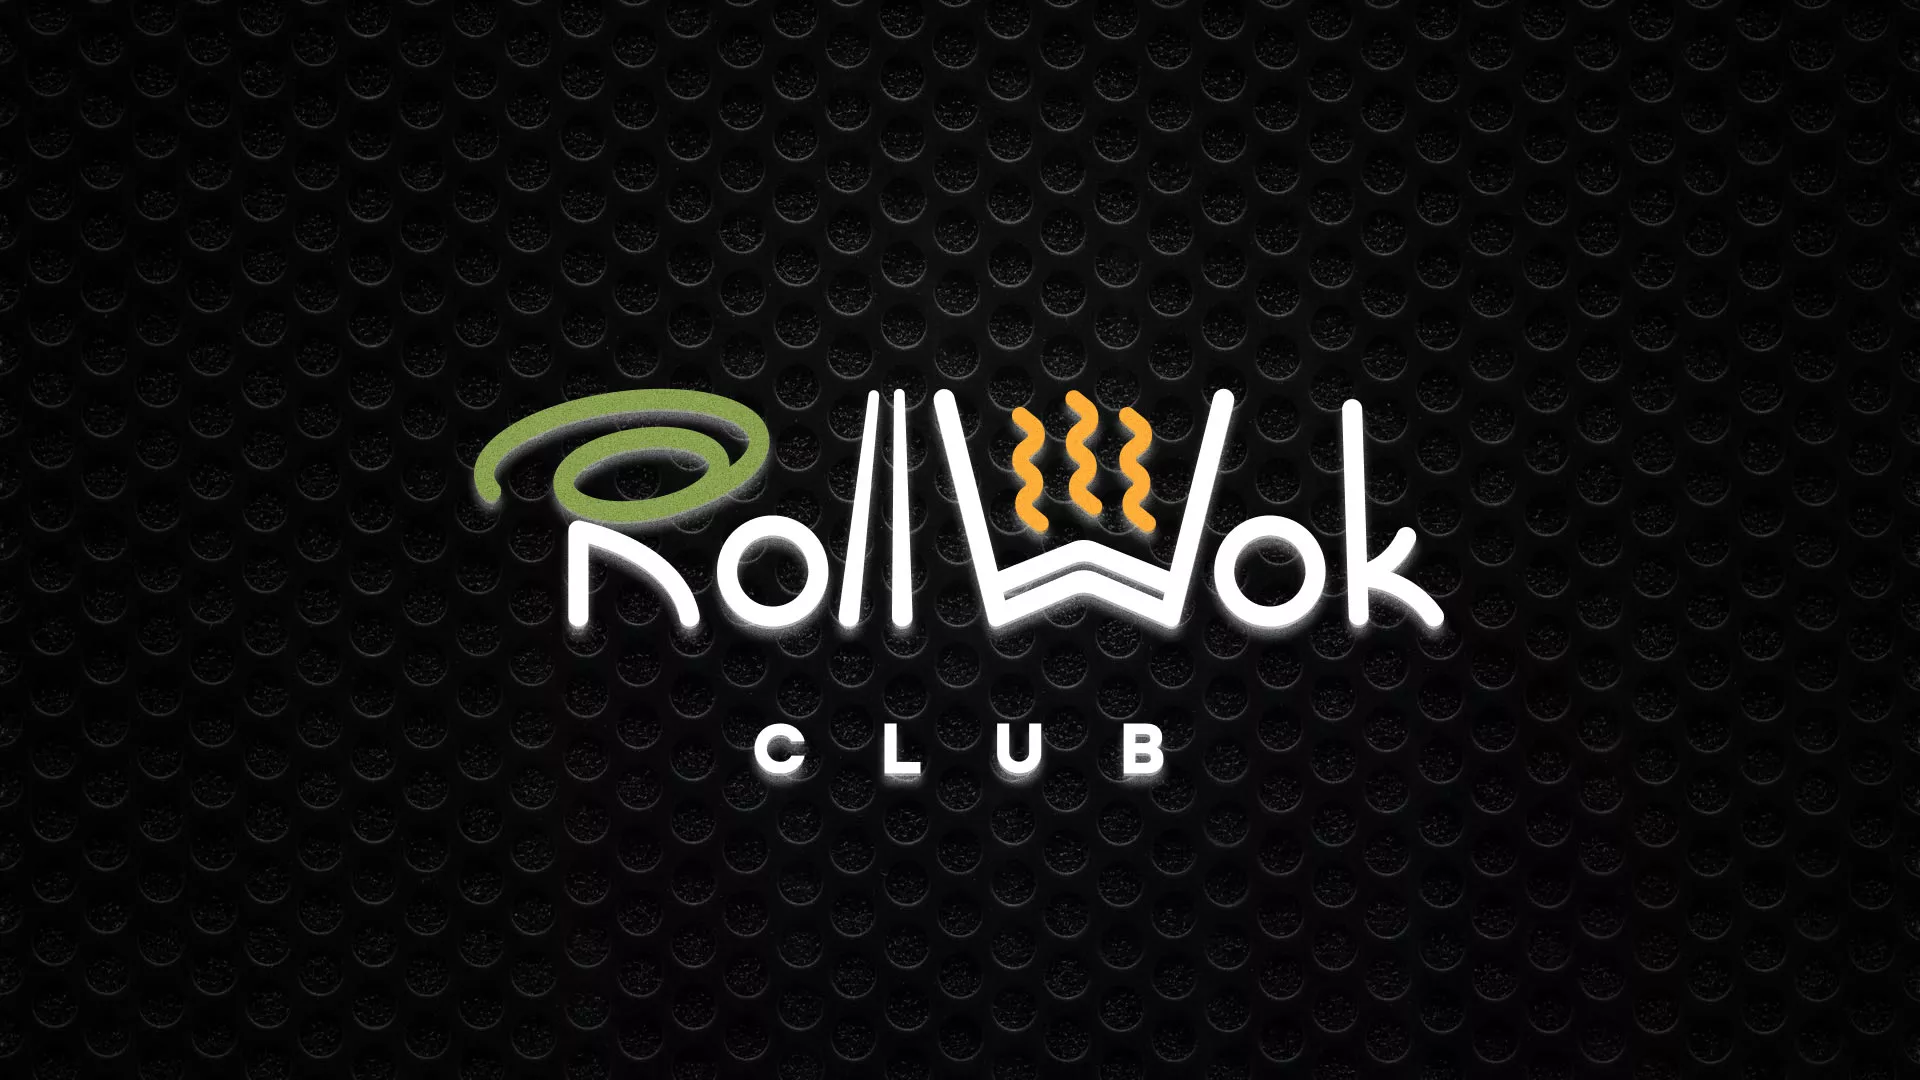 Брендирование торговых точек суши-бара «Roll Wok Club» в Усмани